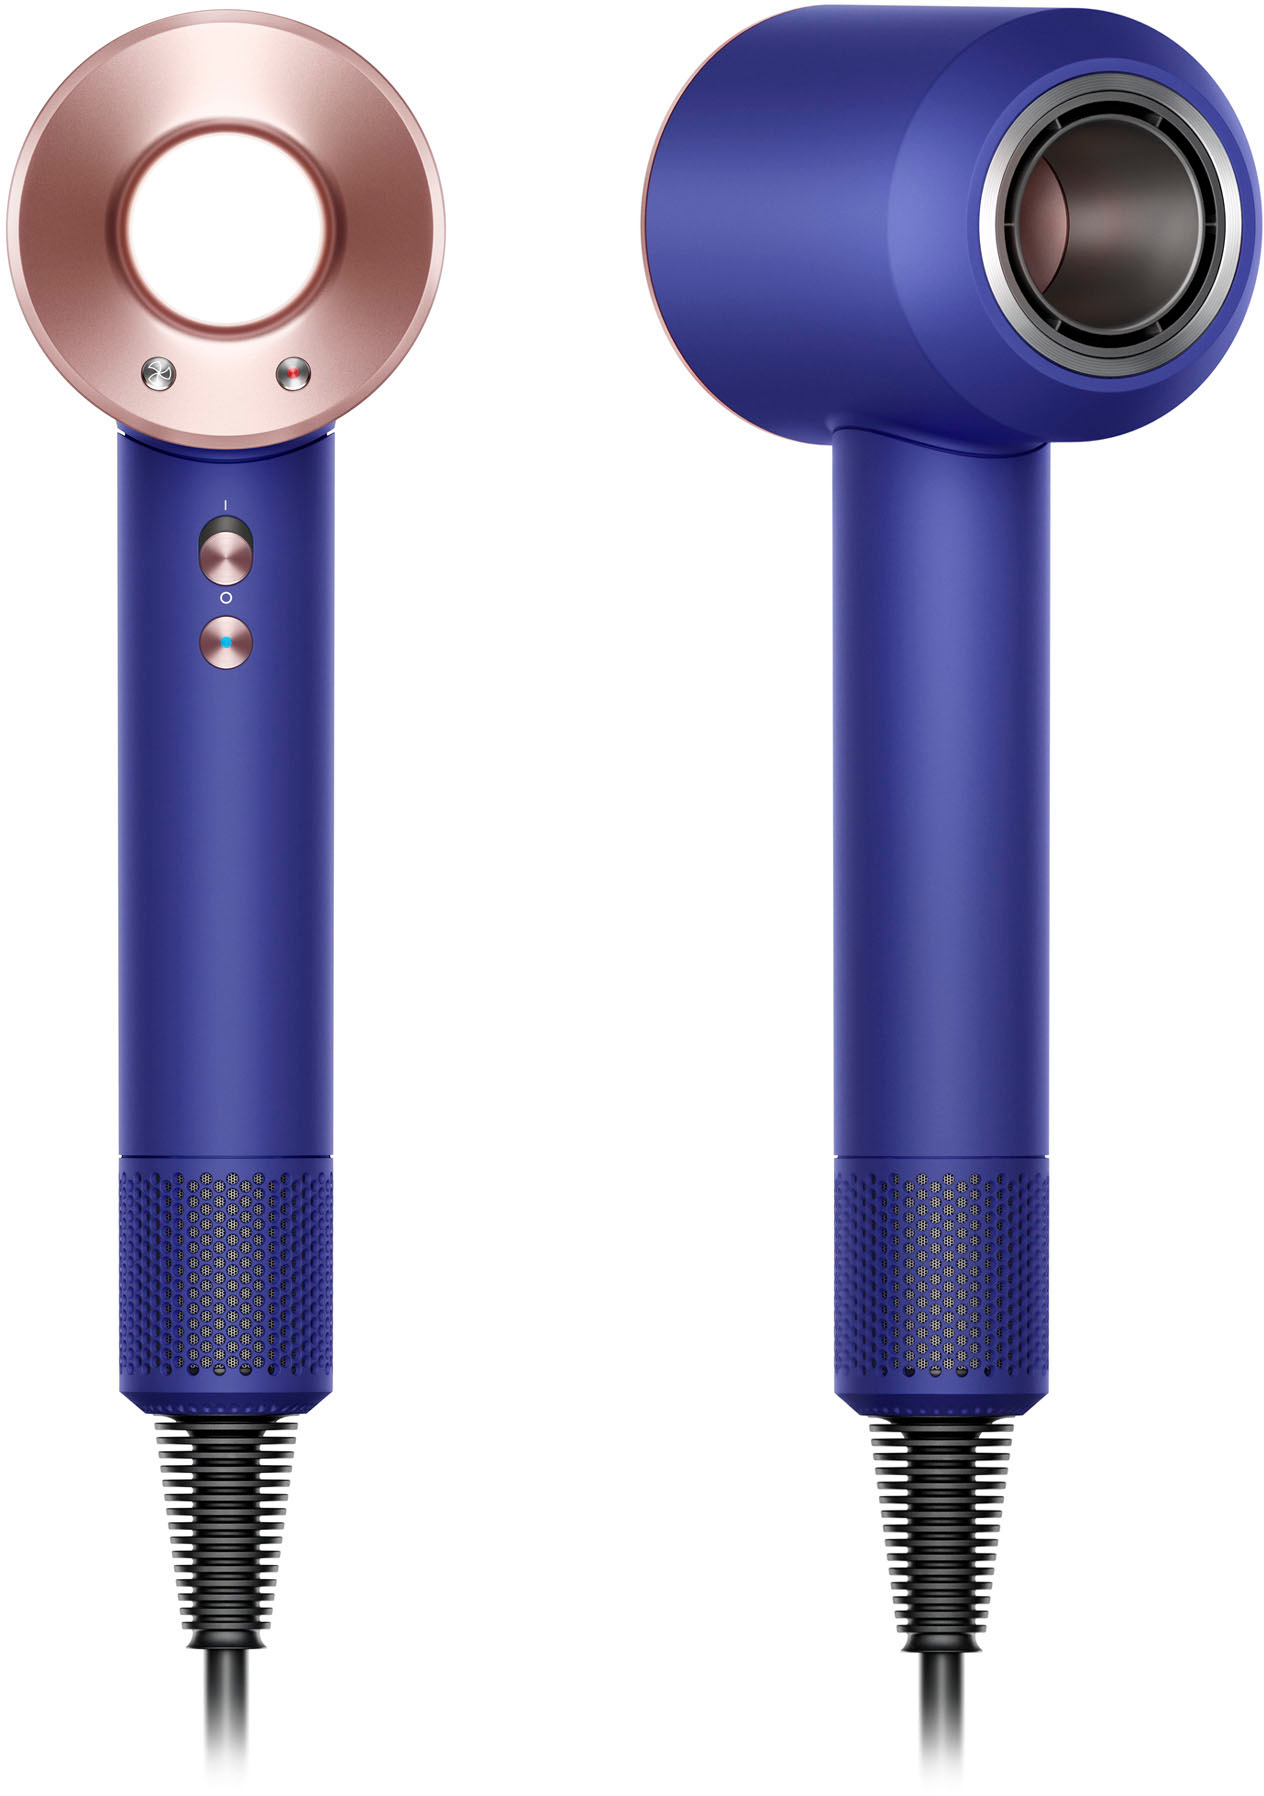 Angle View: Dyson - Supersonic Hair Dryer - Vinca Blue/Rosé